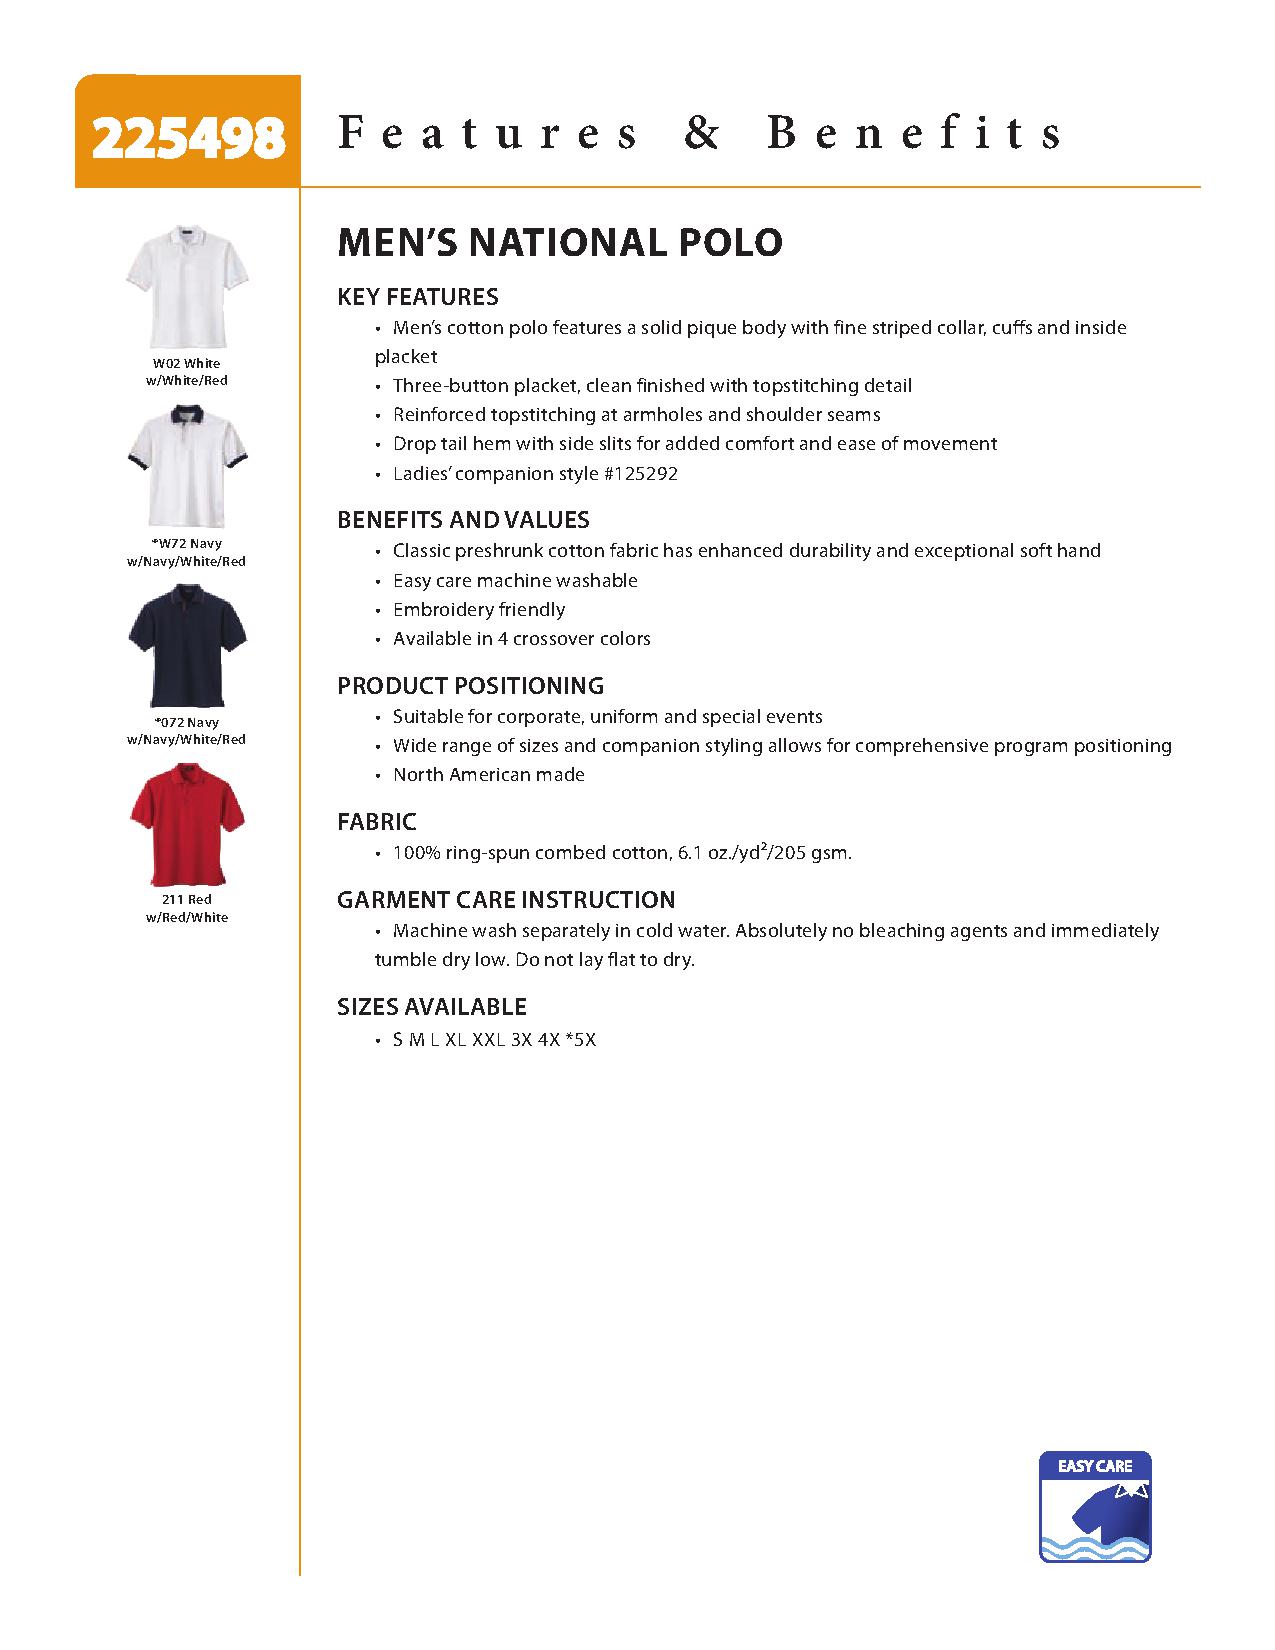 Ash City Pique 225498 - Men's National Polo